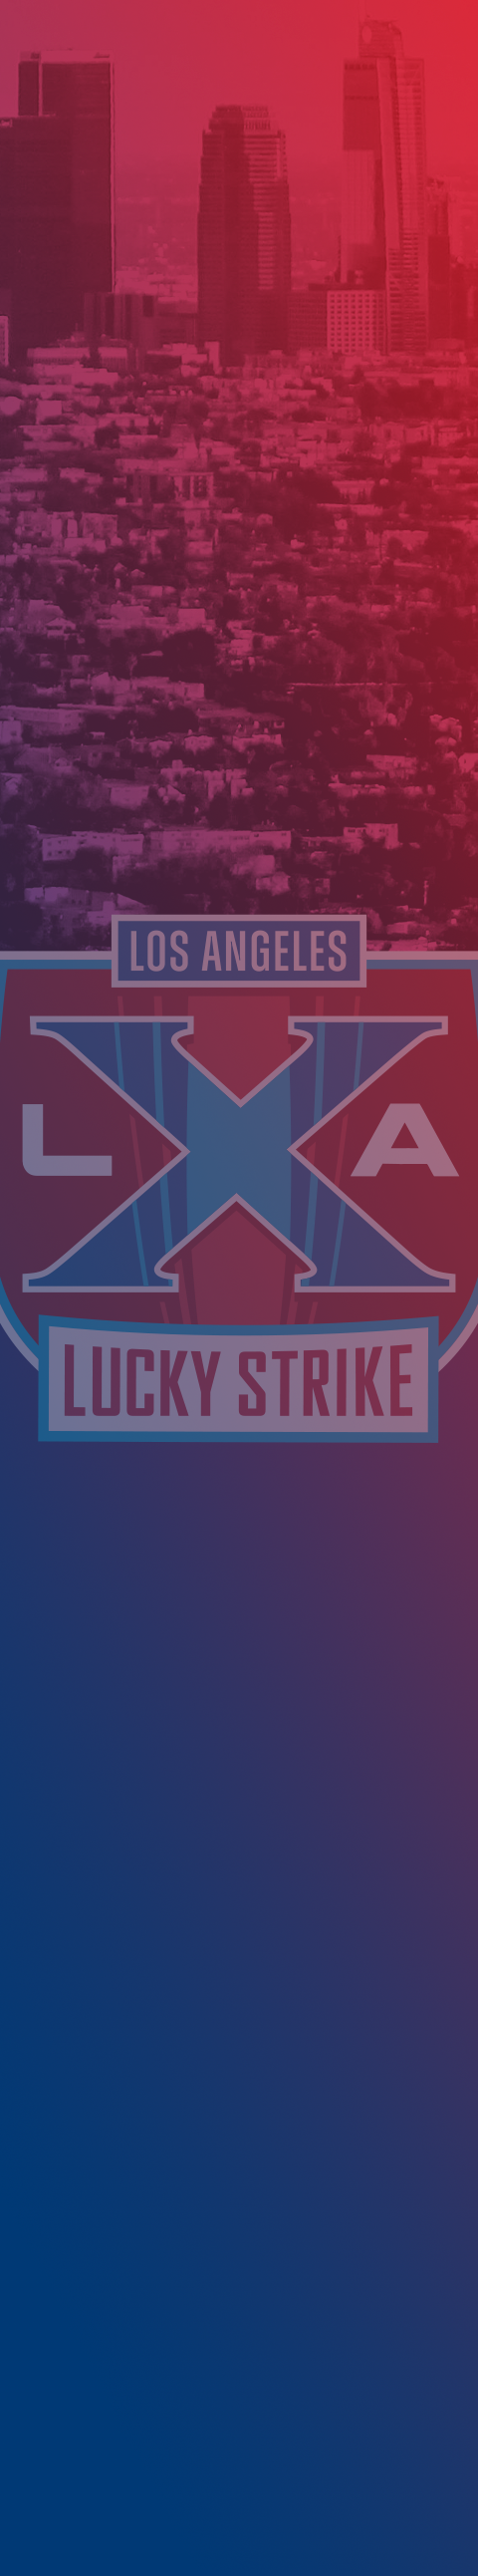 PBA League L.A. X Background Image